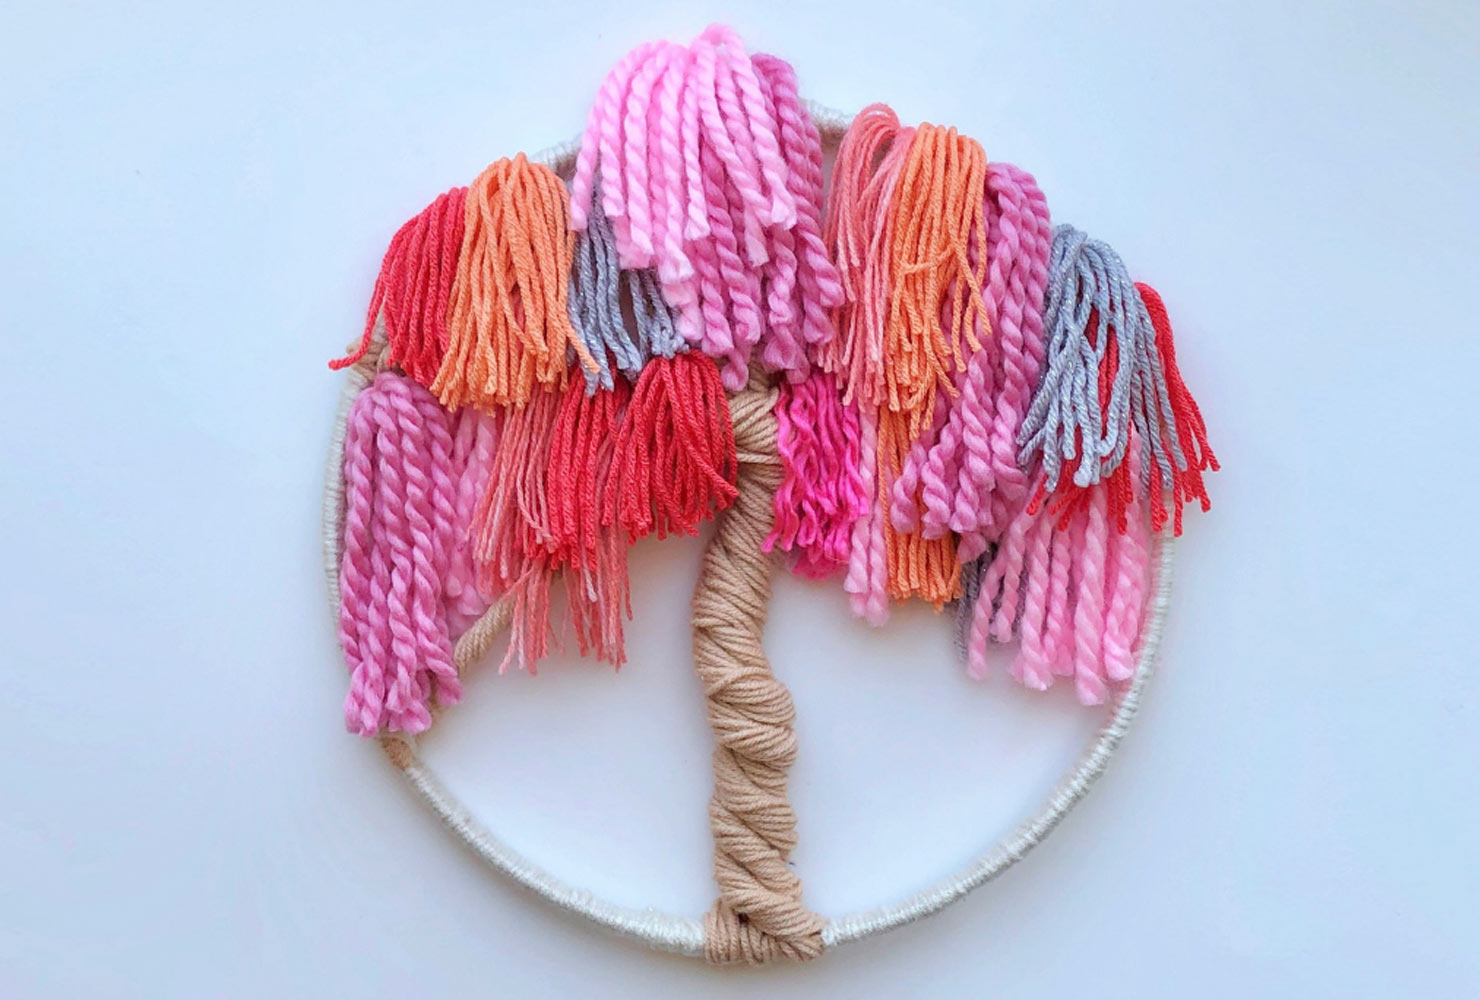 Pink embroidery hoop of tree.